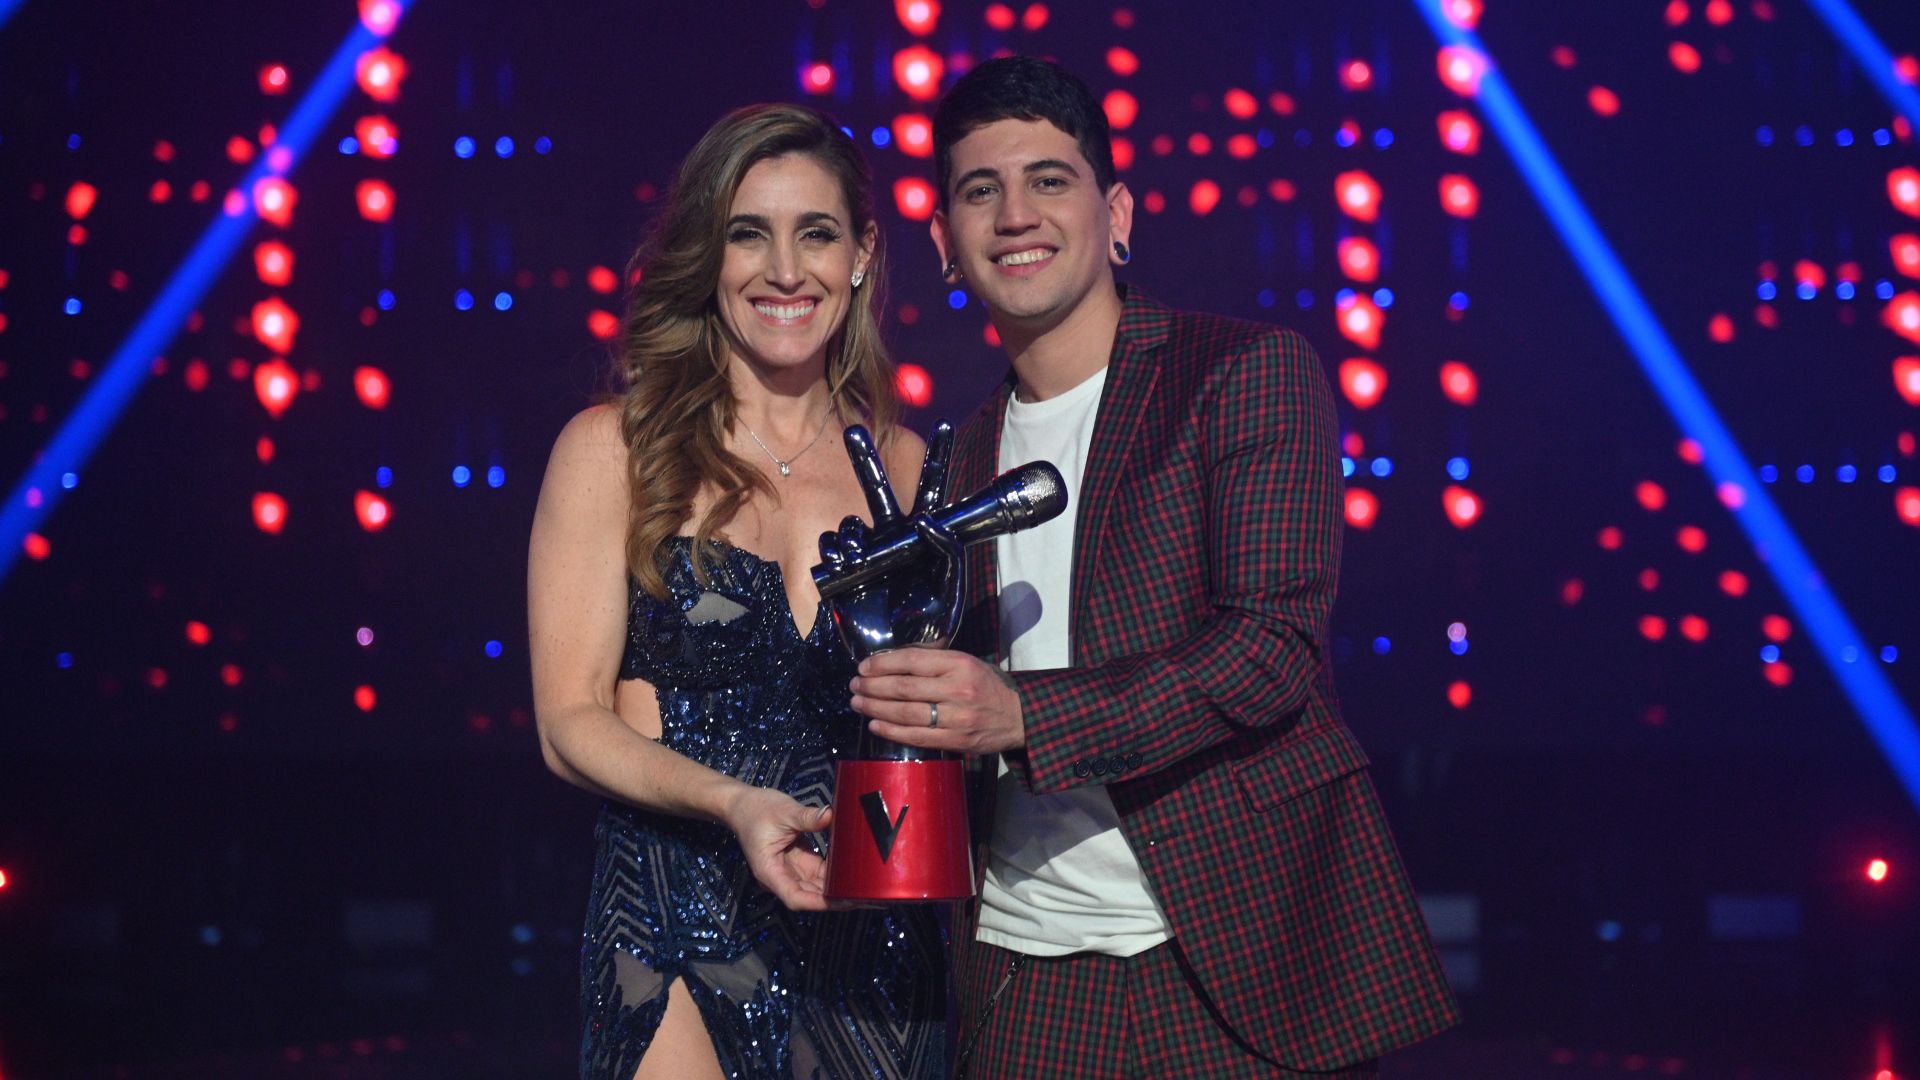 Yhosva Montoya, minutos después de consagrarse ganador de La Voz Argentina junto a Soledad Pastorutti (Foto: Prensa Telefe)